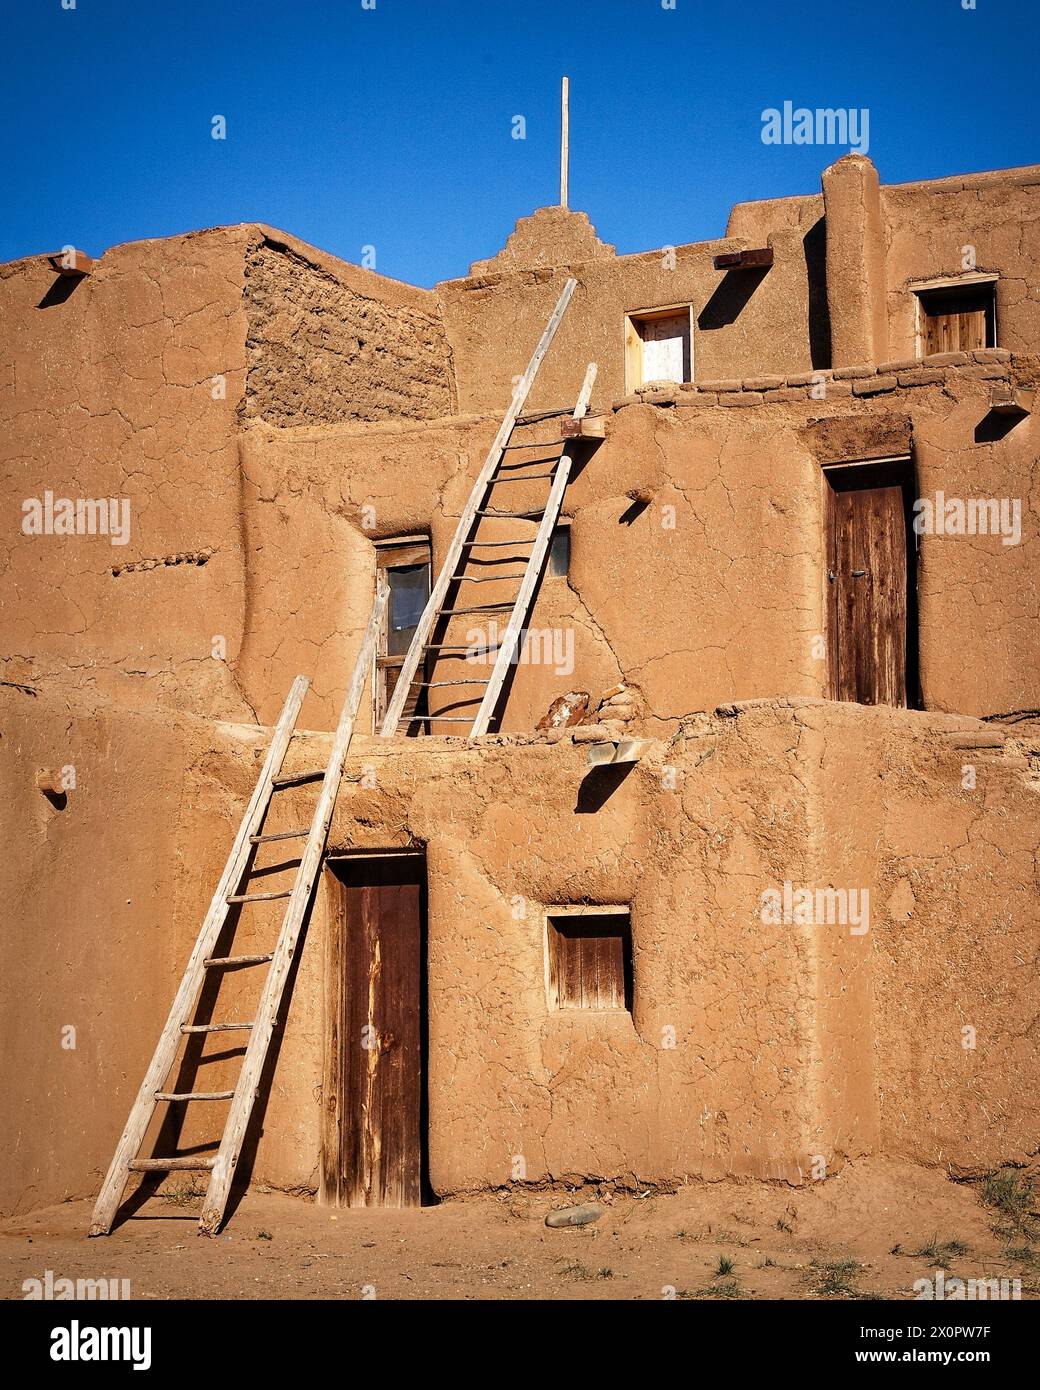 Die steigenden lehmziegel des historischen Taos Pueblo in Taos, New Mexico. Stockfoto